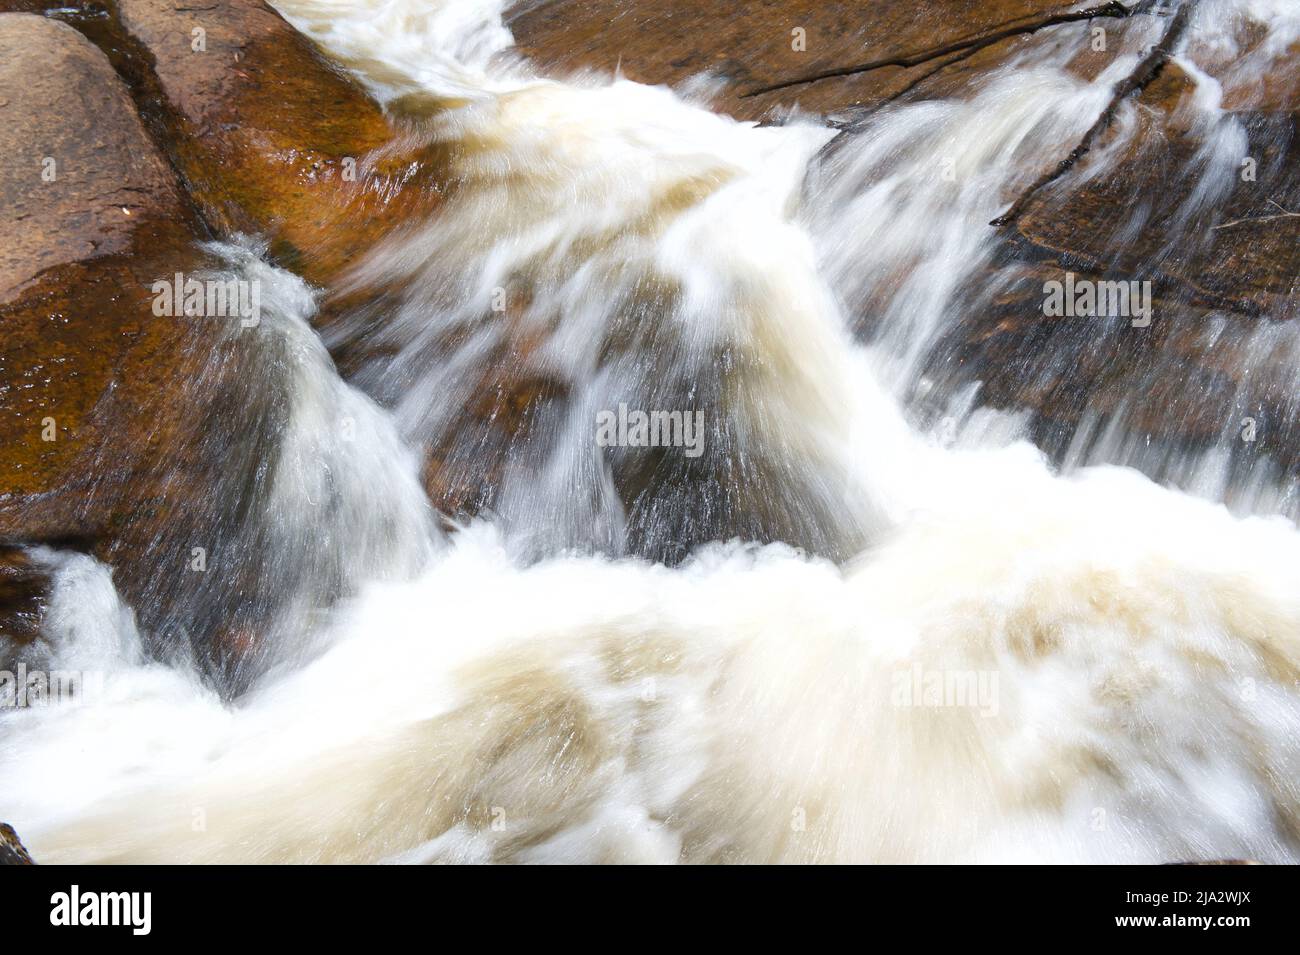 Il caos delle acque bianche sul fiume Murrundindi nella Toolangi state Forest a Victoria, Australia. Le Cascate di Murrundindi erano in piena alluvione. Foto Stock